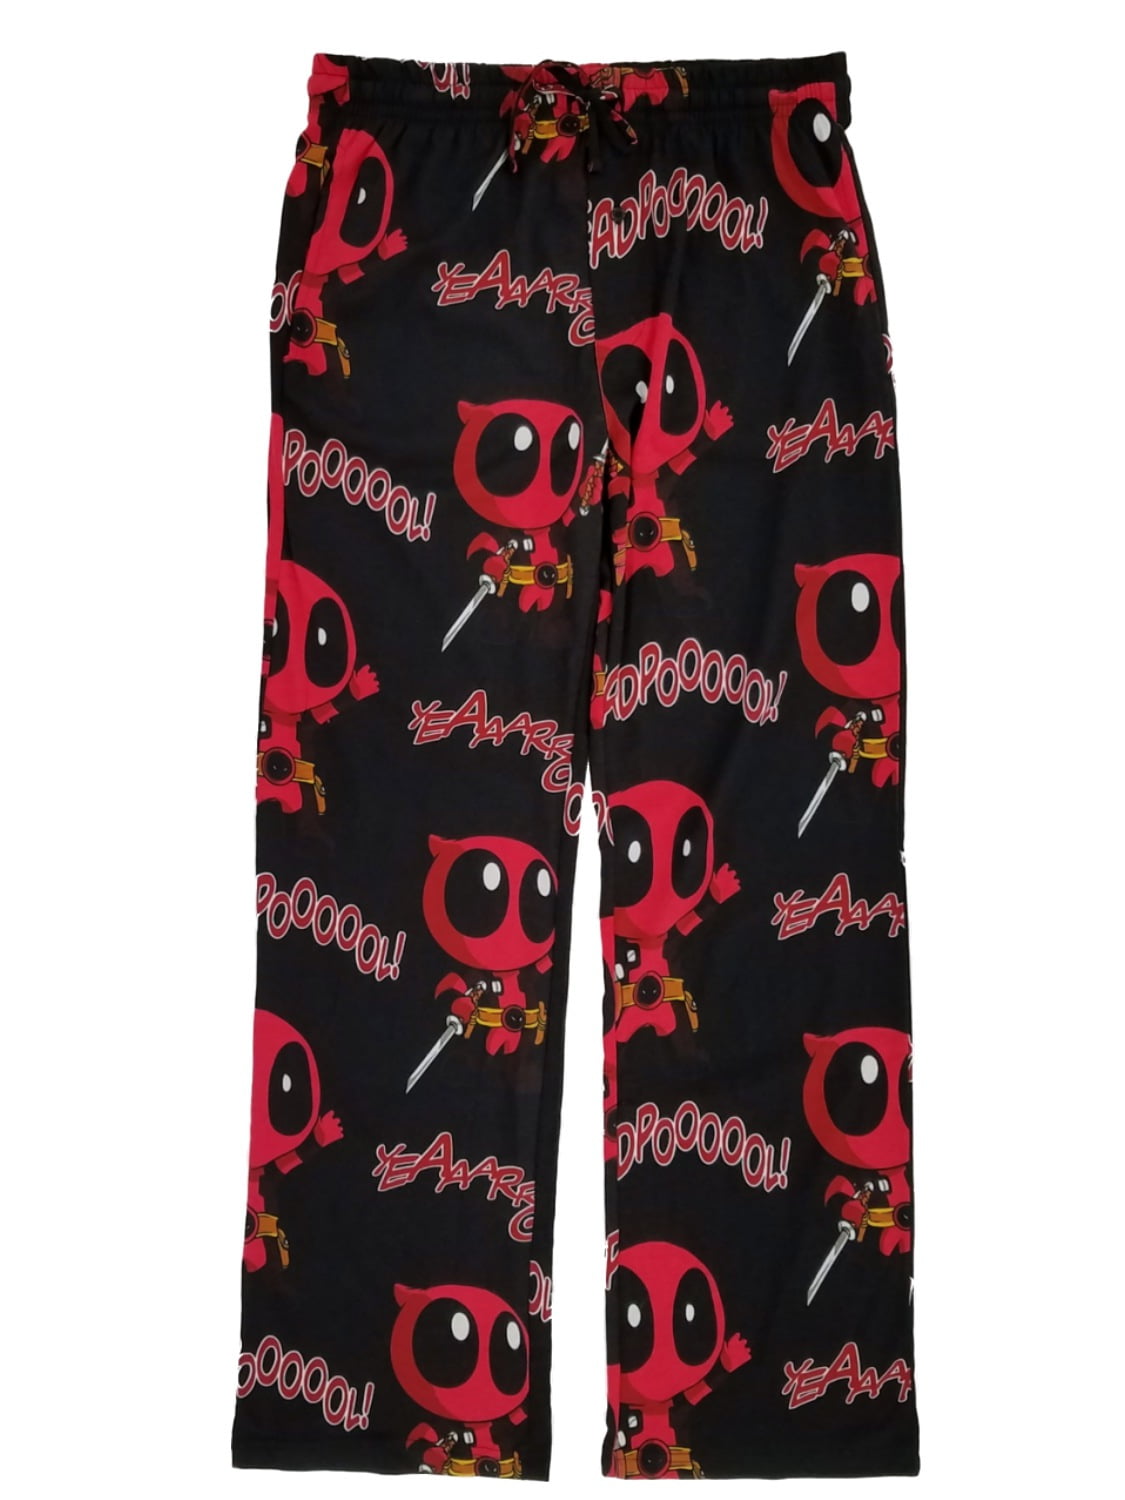 Marvel Comics Mens Black Mini Deadpool Sleep Pants Pajama Bottoms